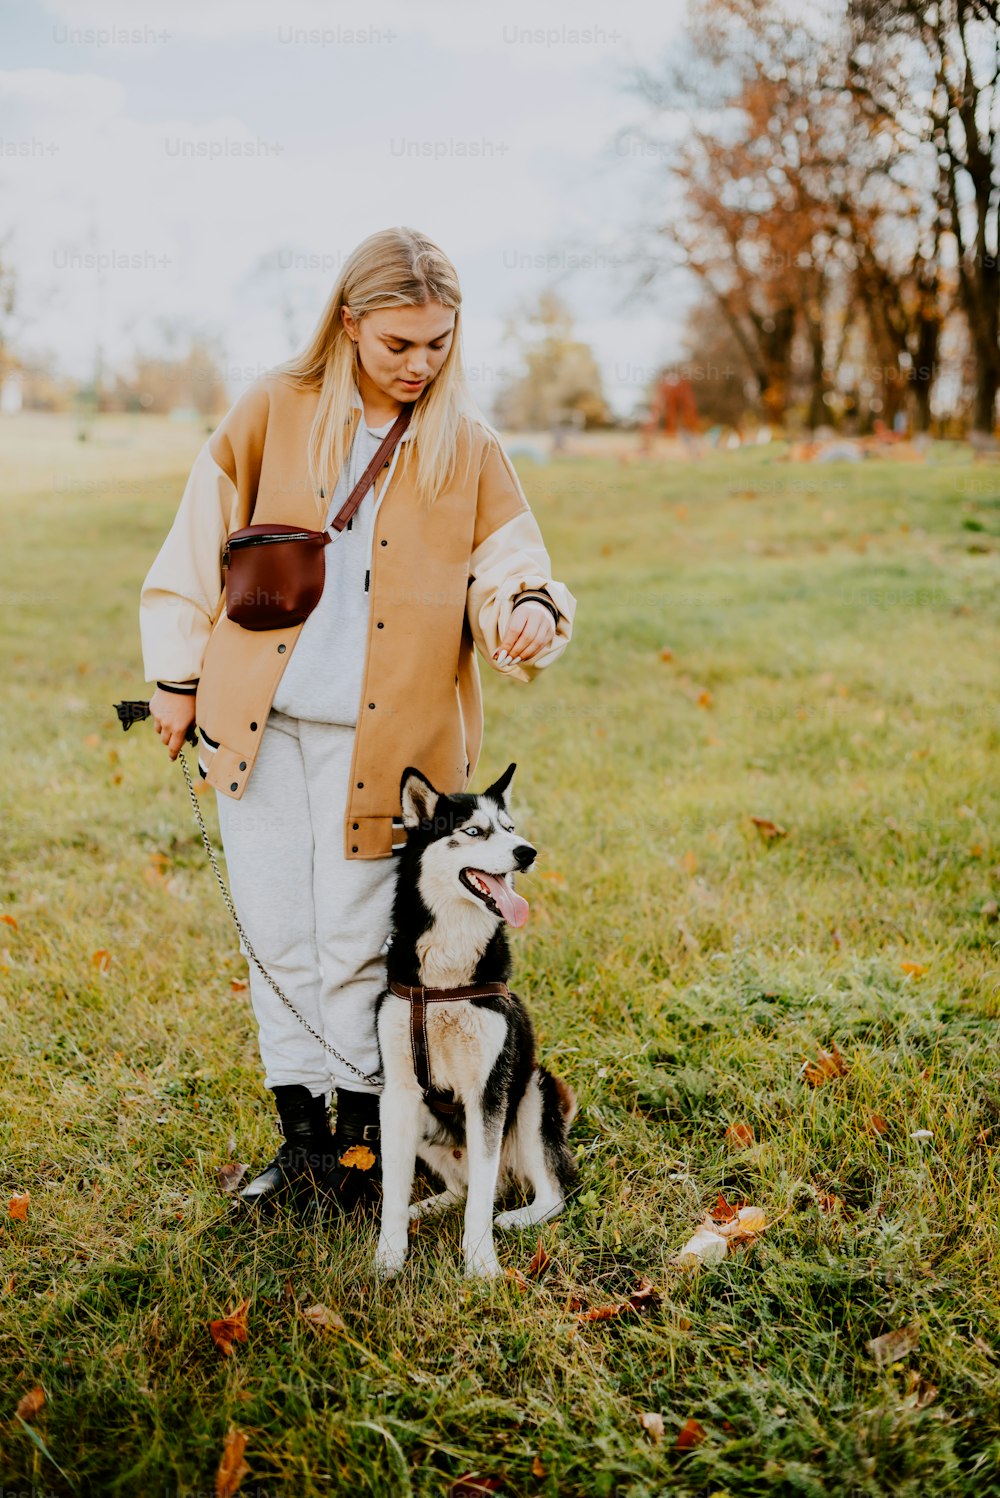 a woman walking a dog in a field